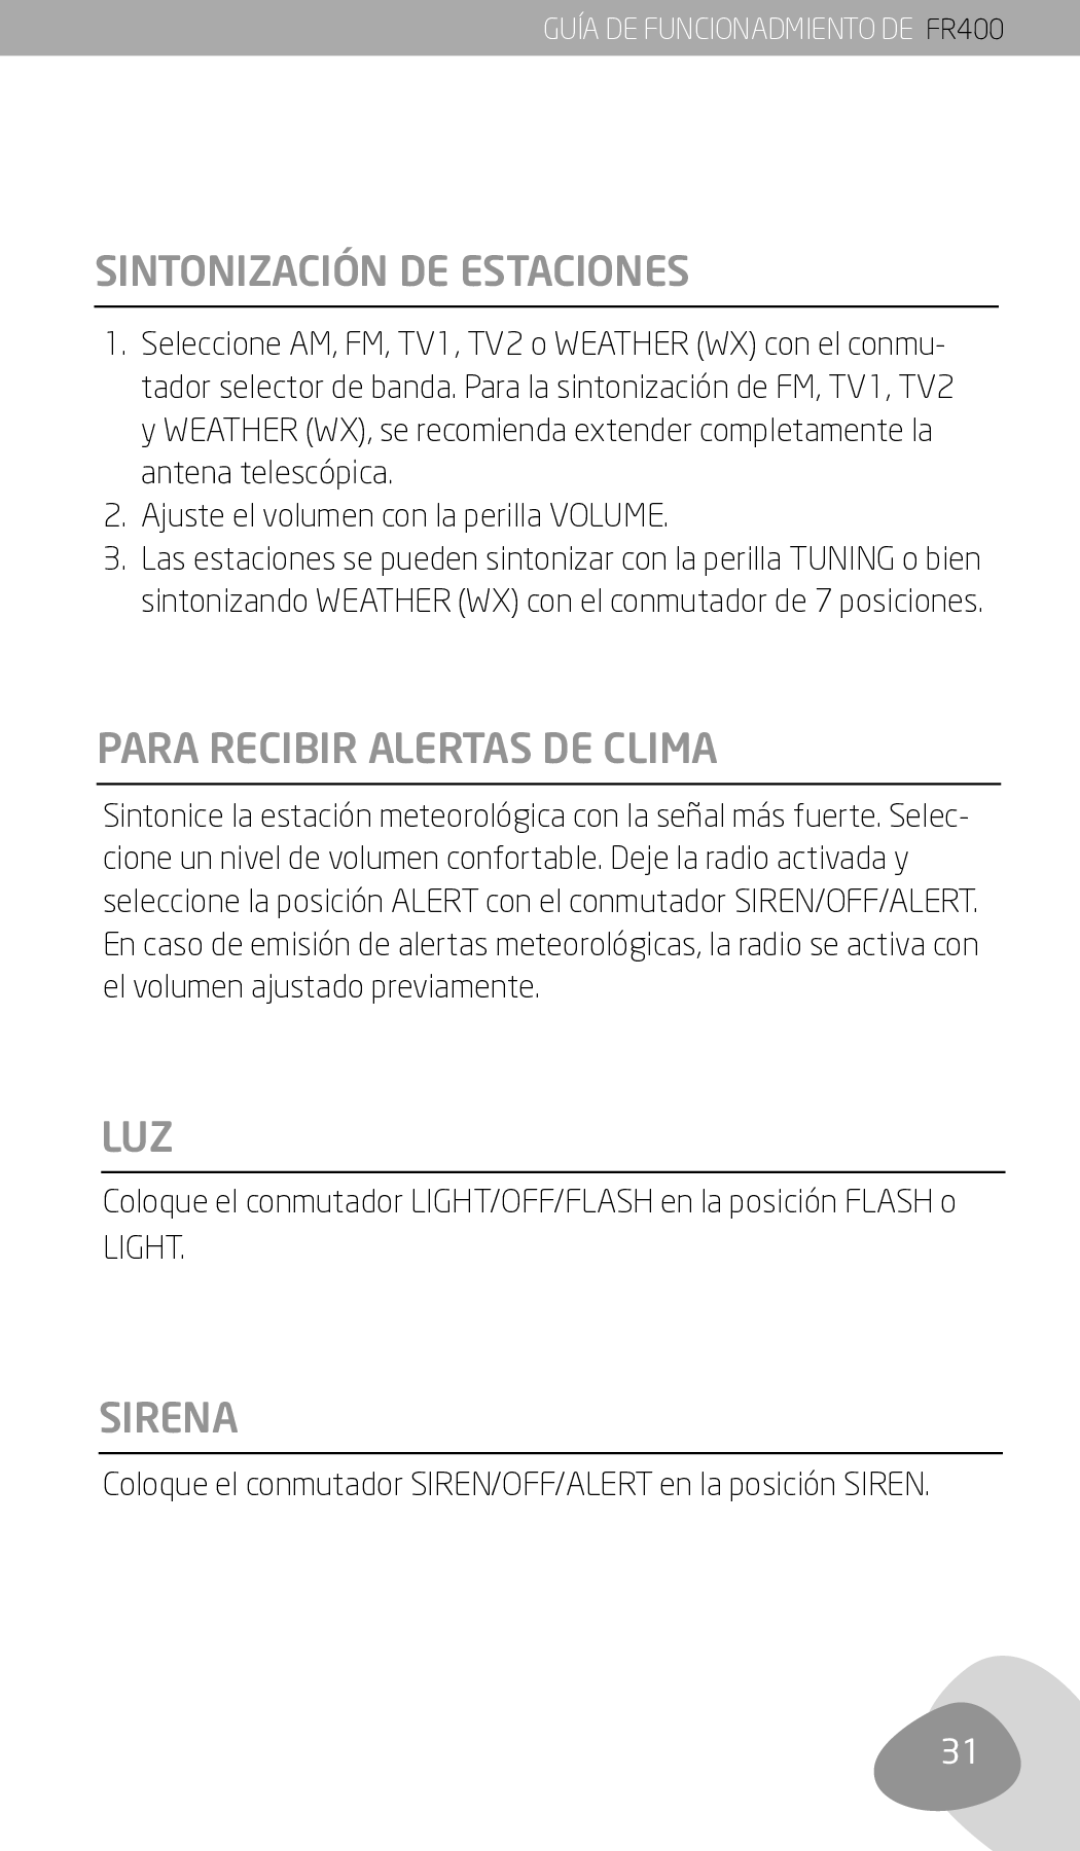 Eton FR400 owner manual Sintonización DE Estaciones, Para Recibir Alertas DE Clima, Luz, Sirena 